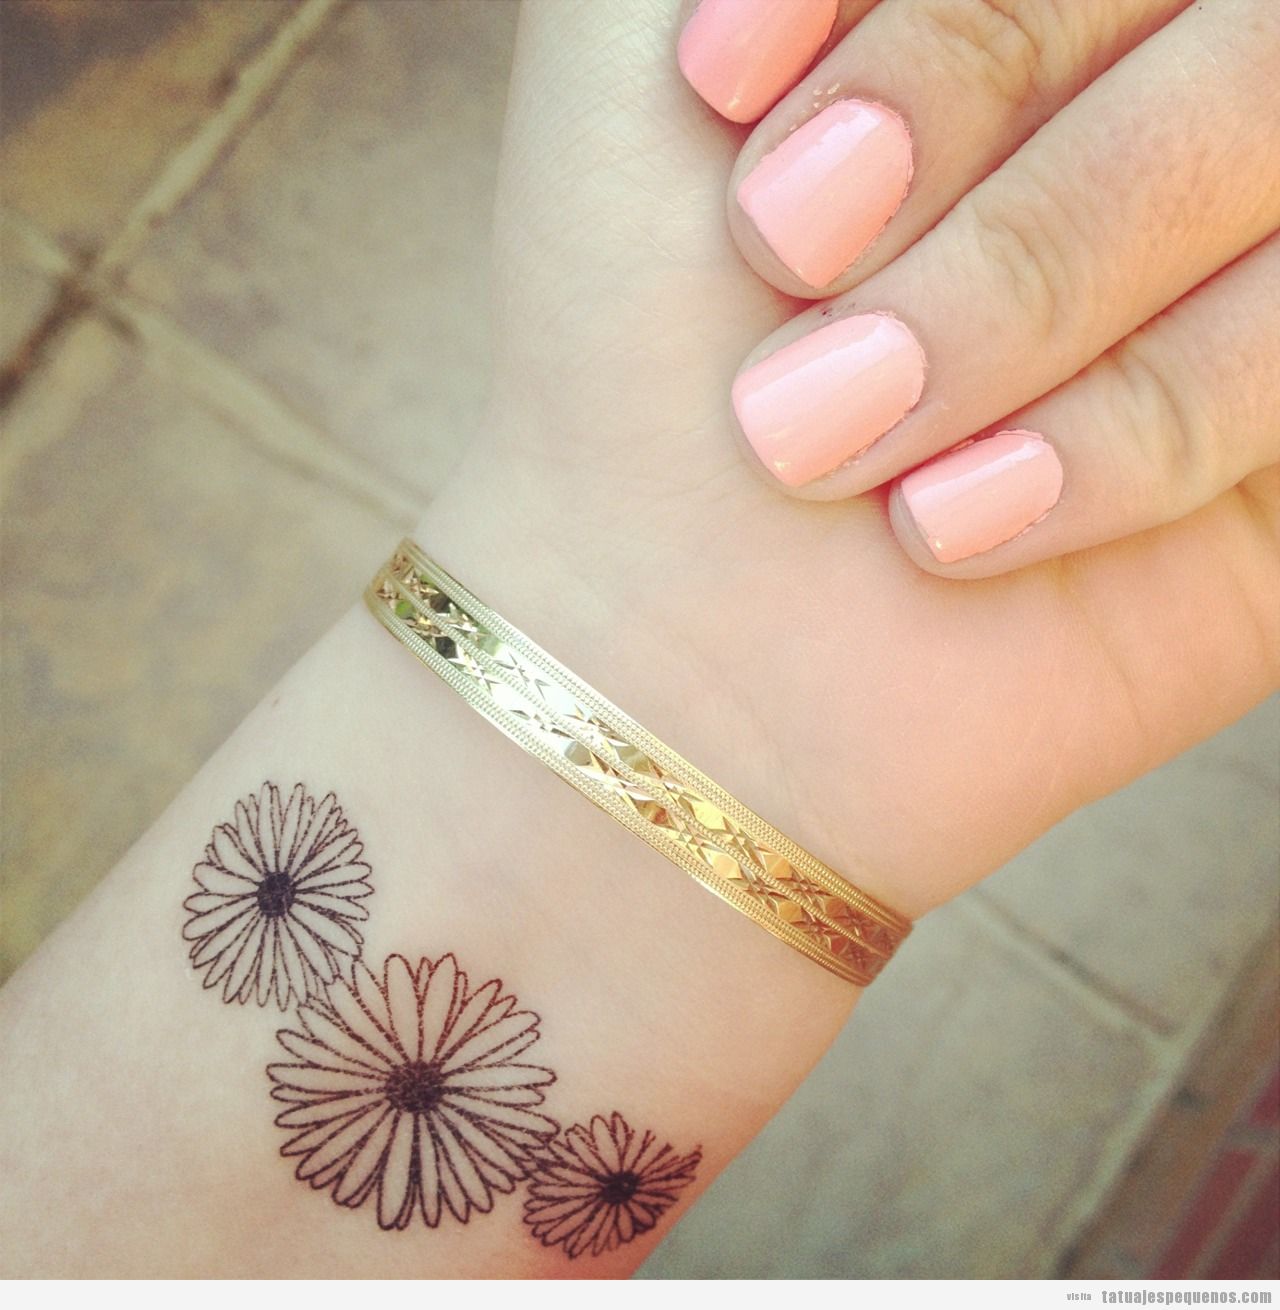 Tatuajes pequeños de flores: + 25 delicados diseños para decorar tu piel •  Tatuajes pequeños